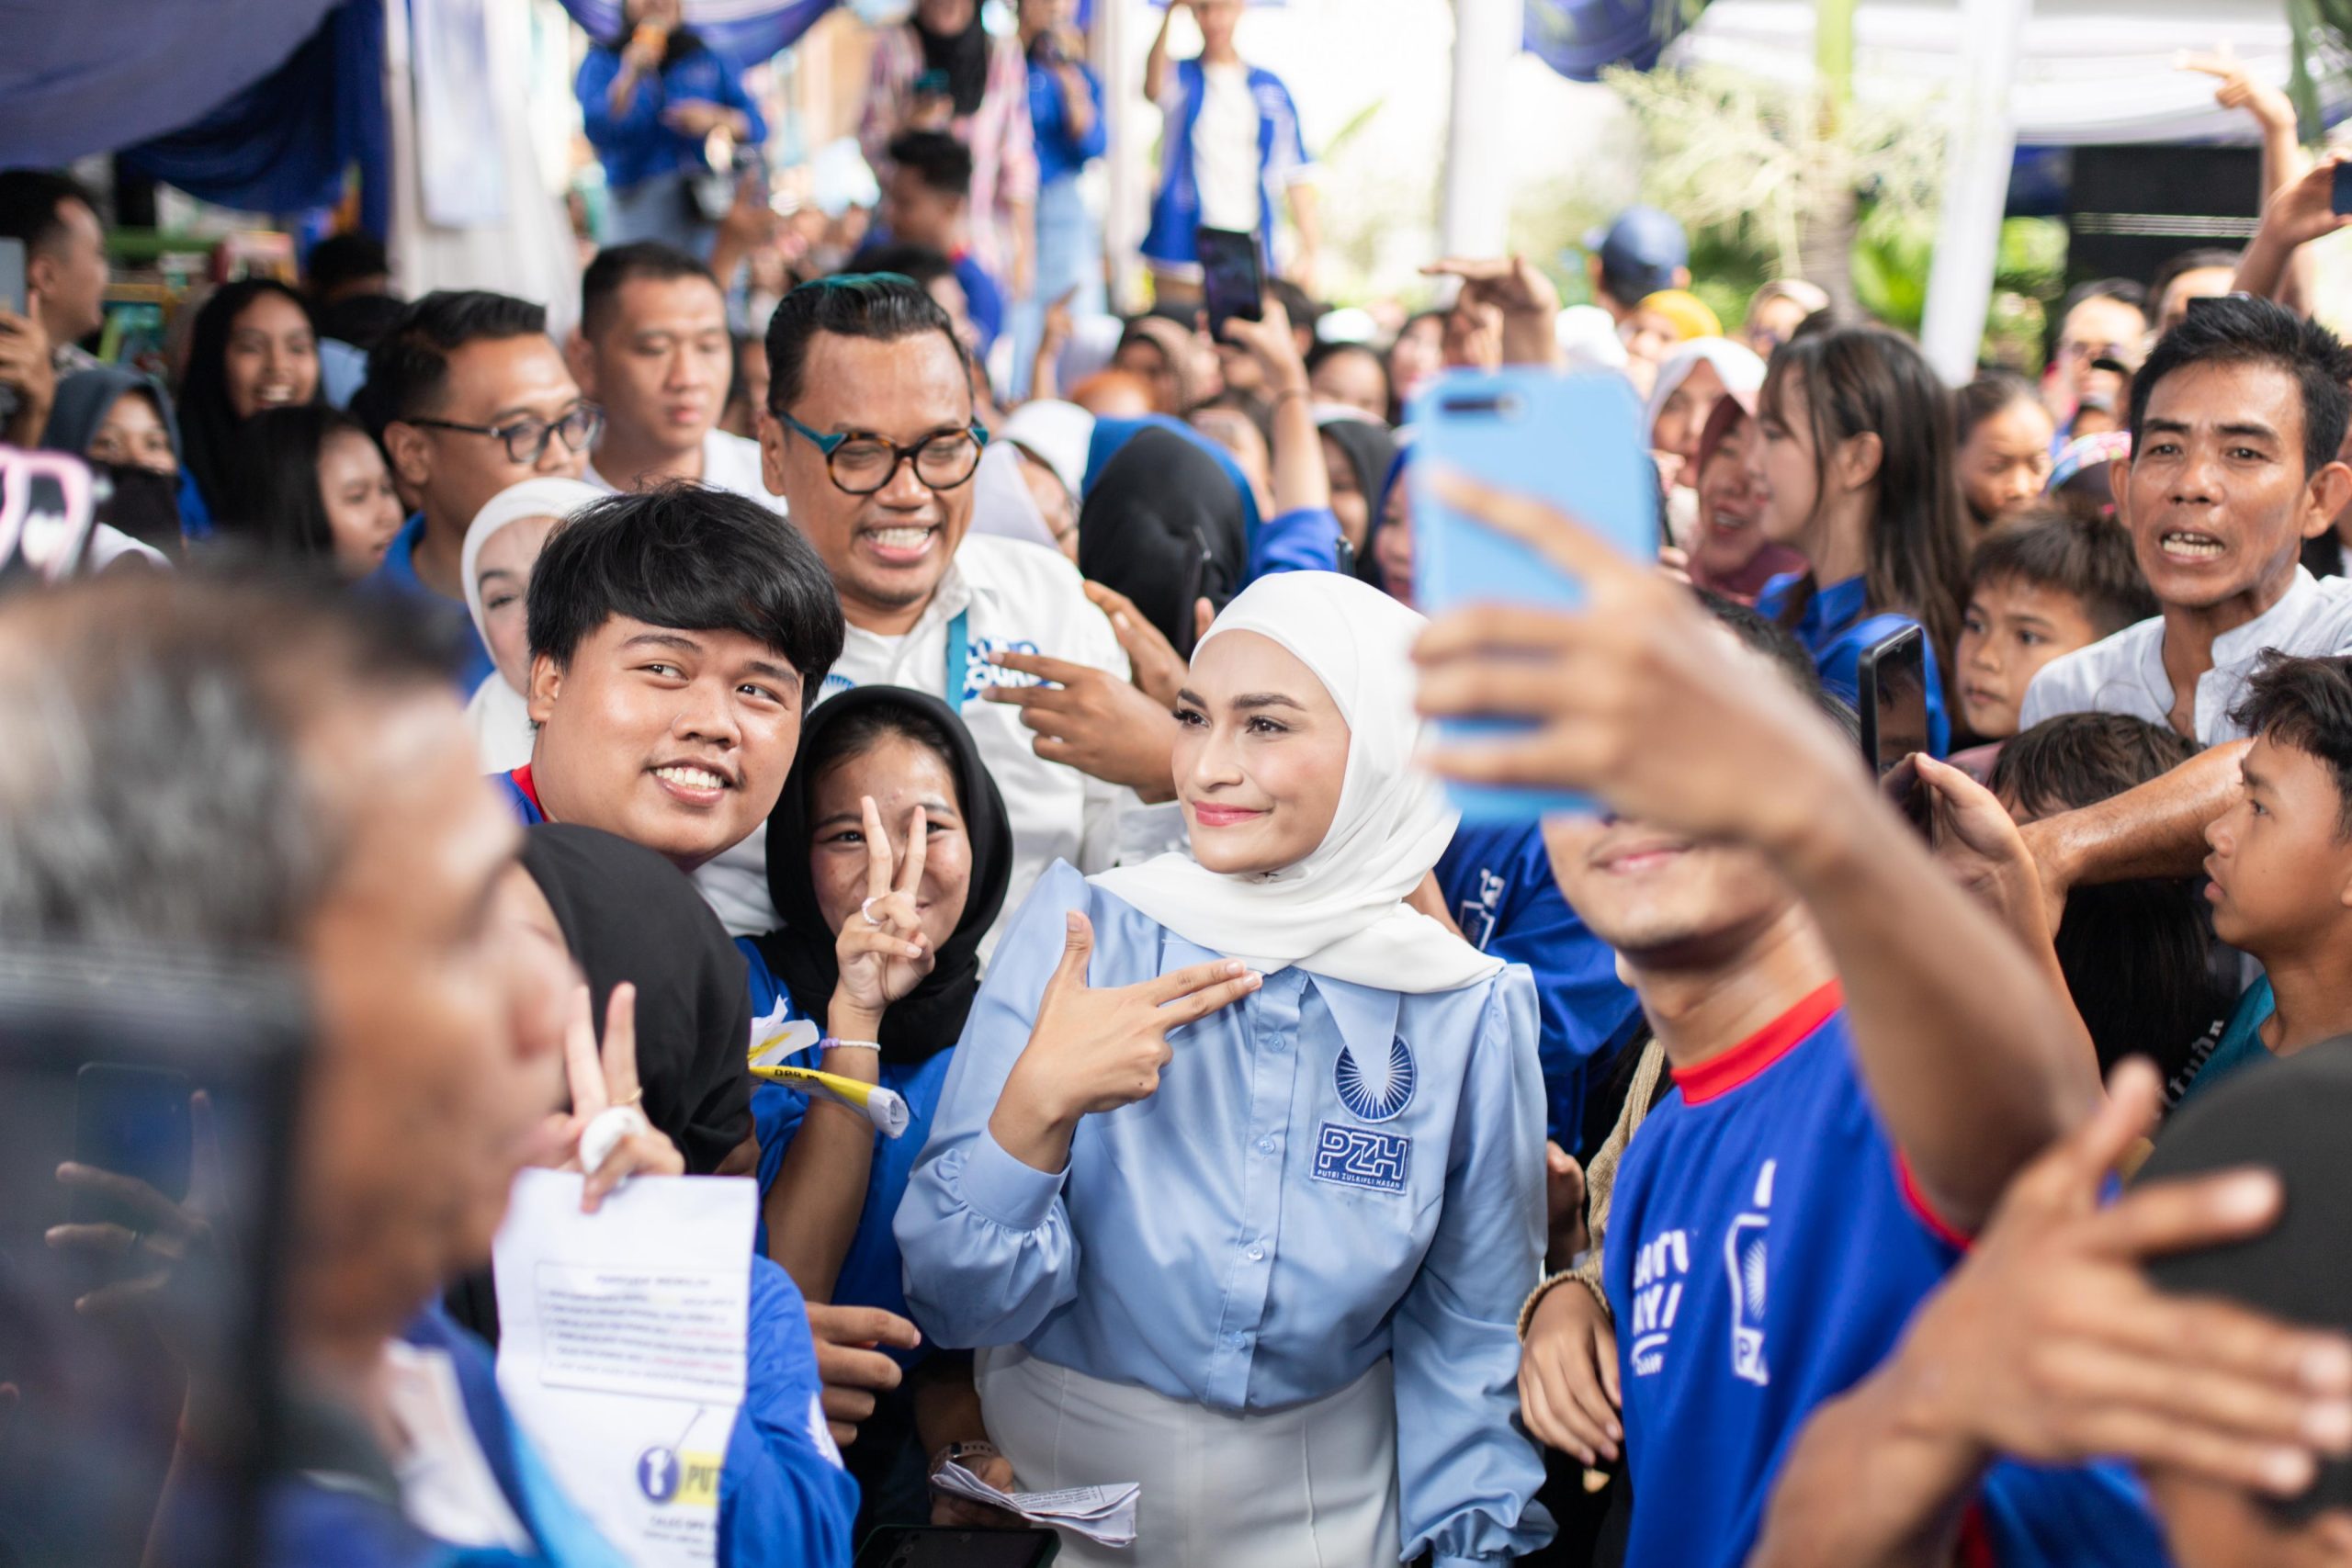 Putri Zulkifli Hasan Raih Suara Terbanyak Untuk Dapil 1 DPR-RI Lampung